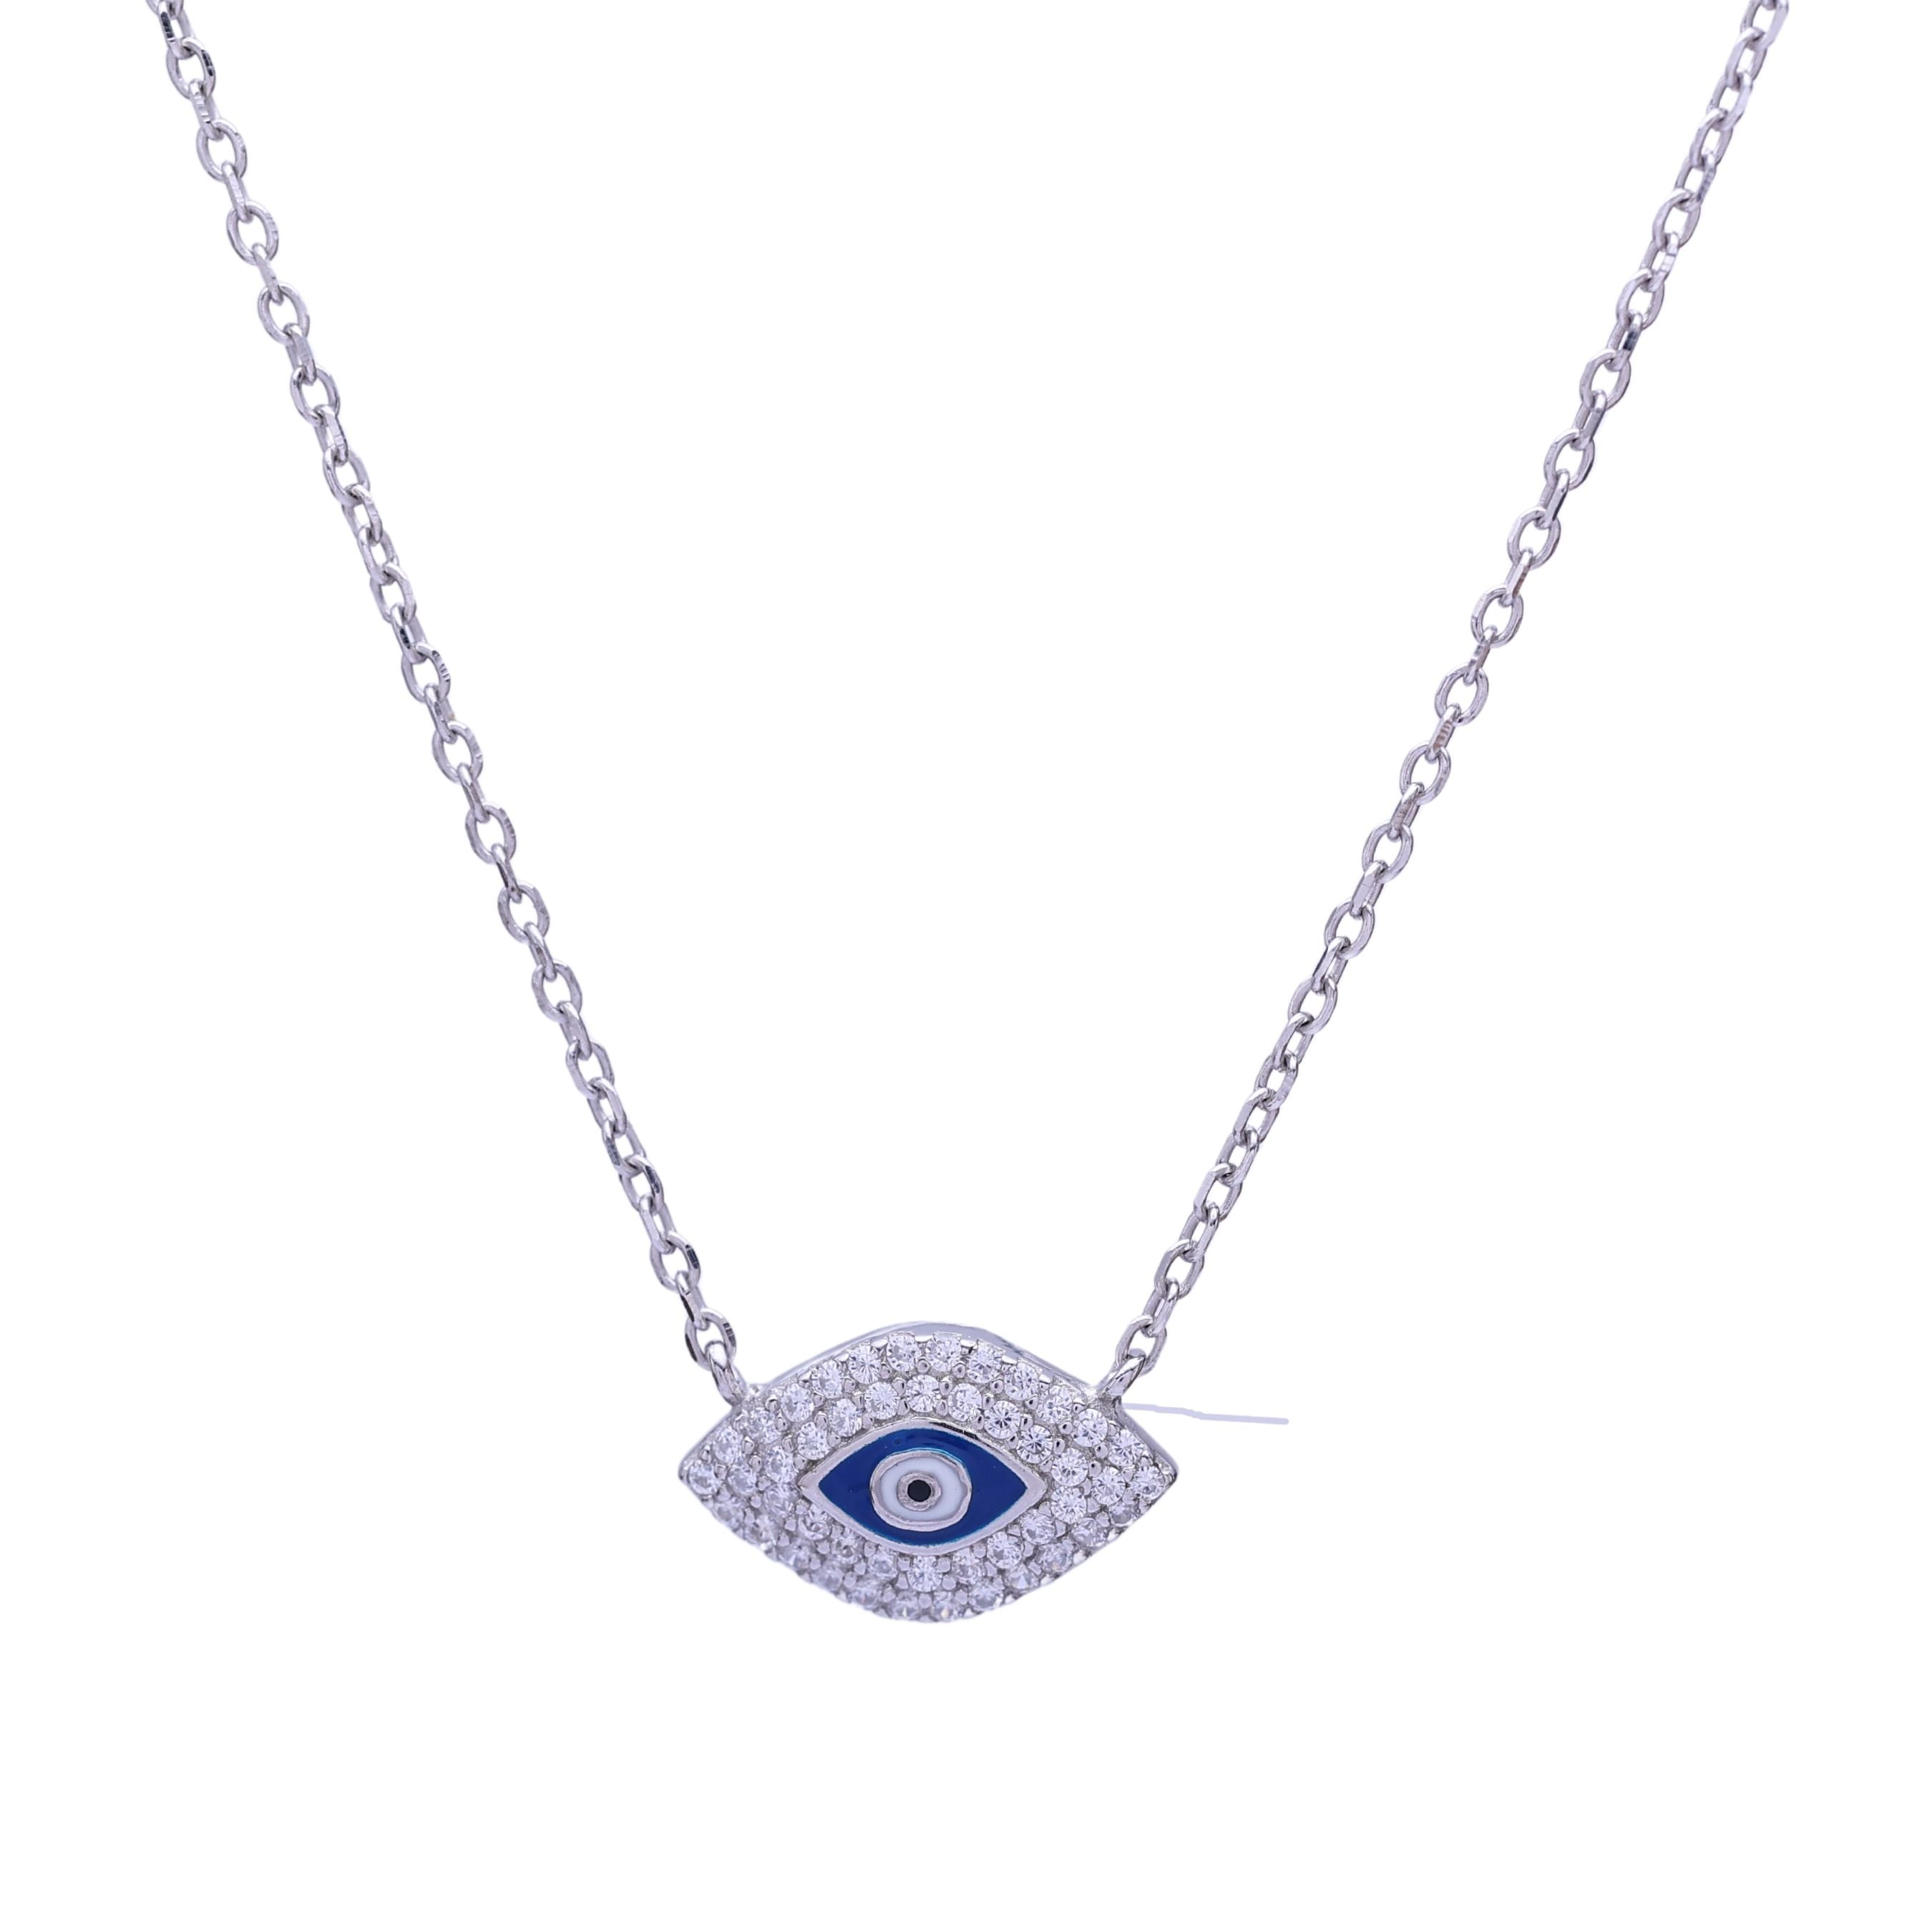 Silver Evil Eye Chain Pendant